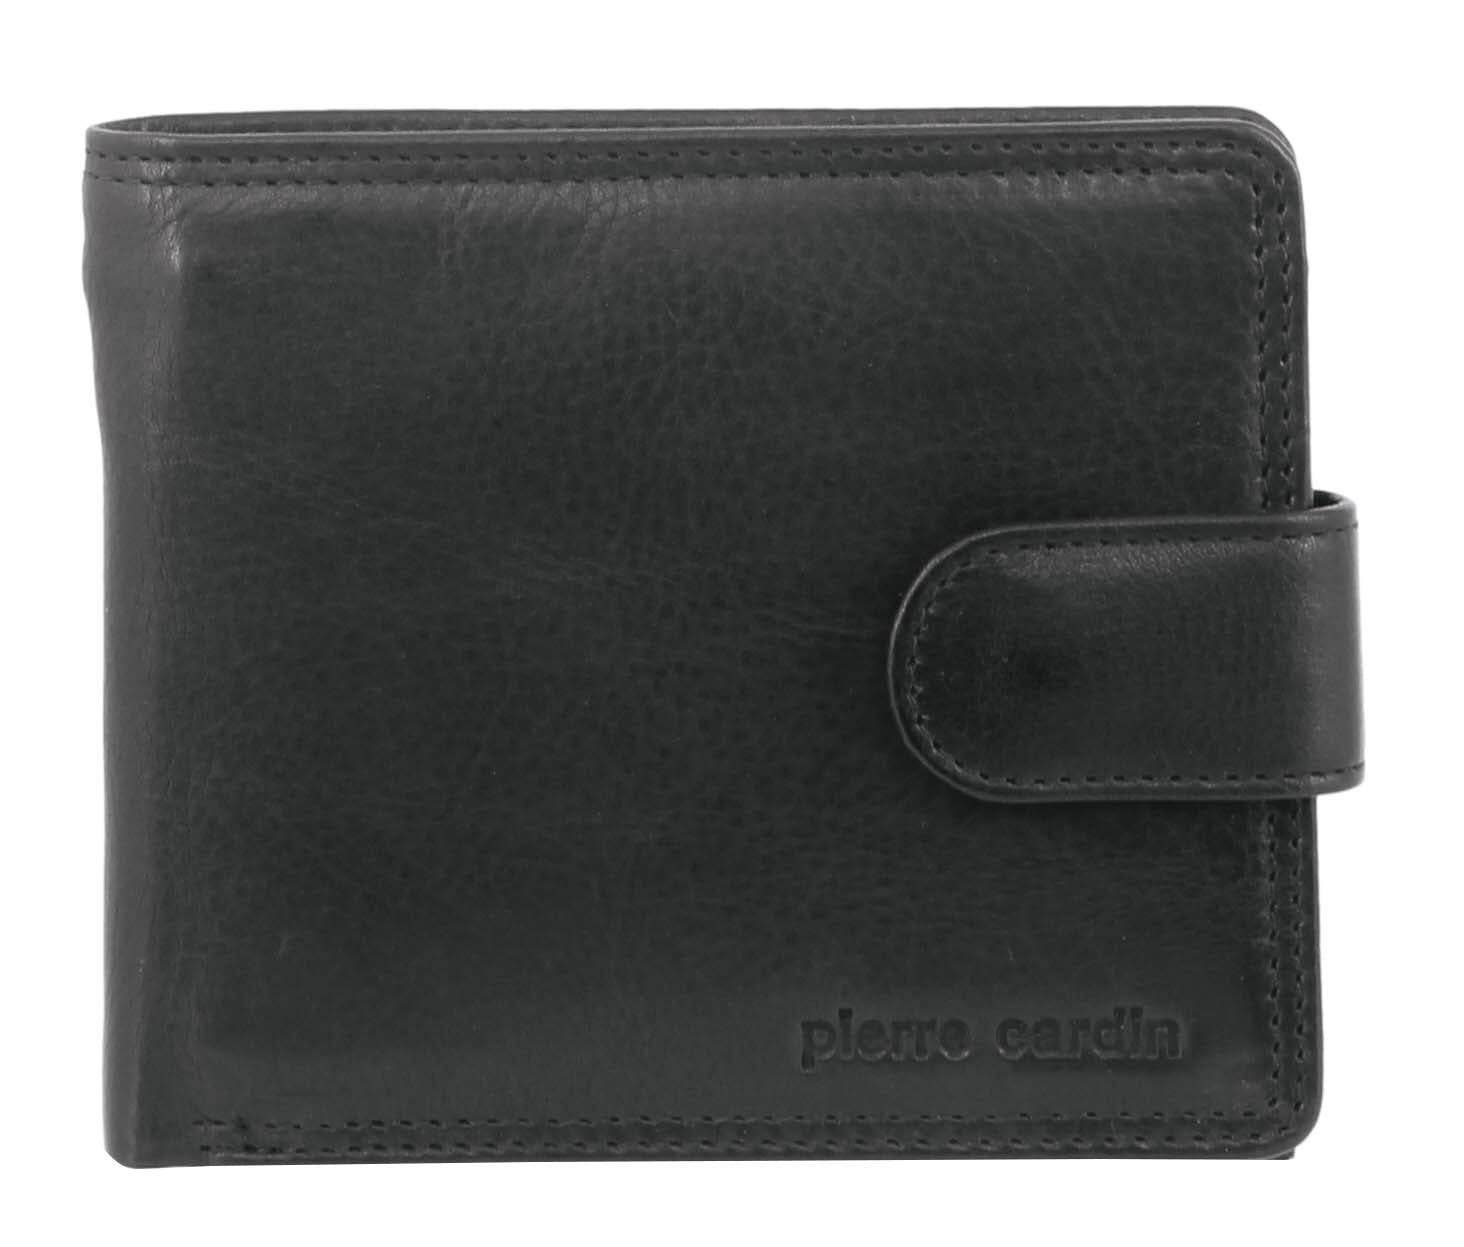 Pierre Cardin Rustic Leather Men's Wallet in Black